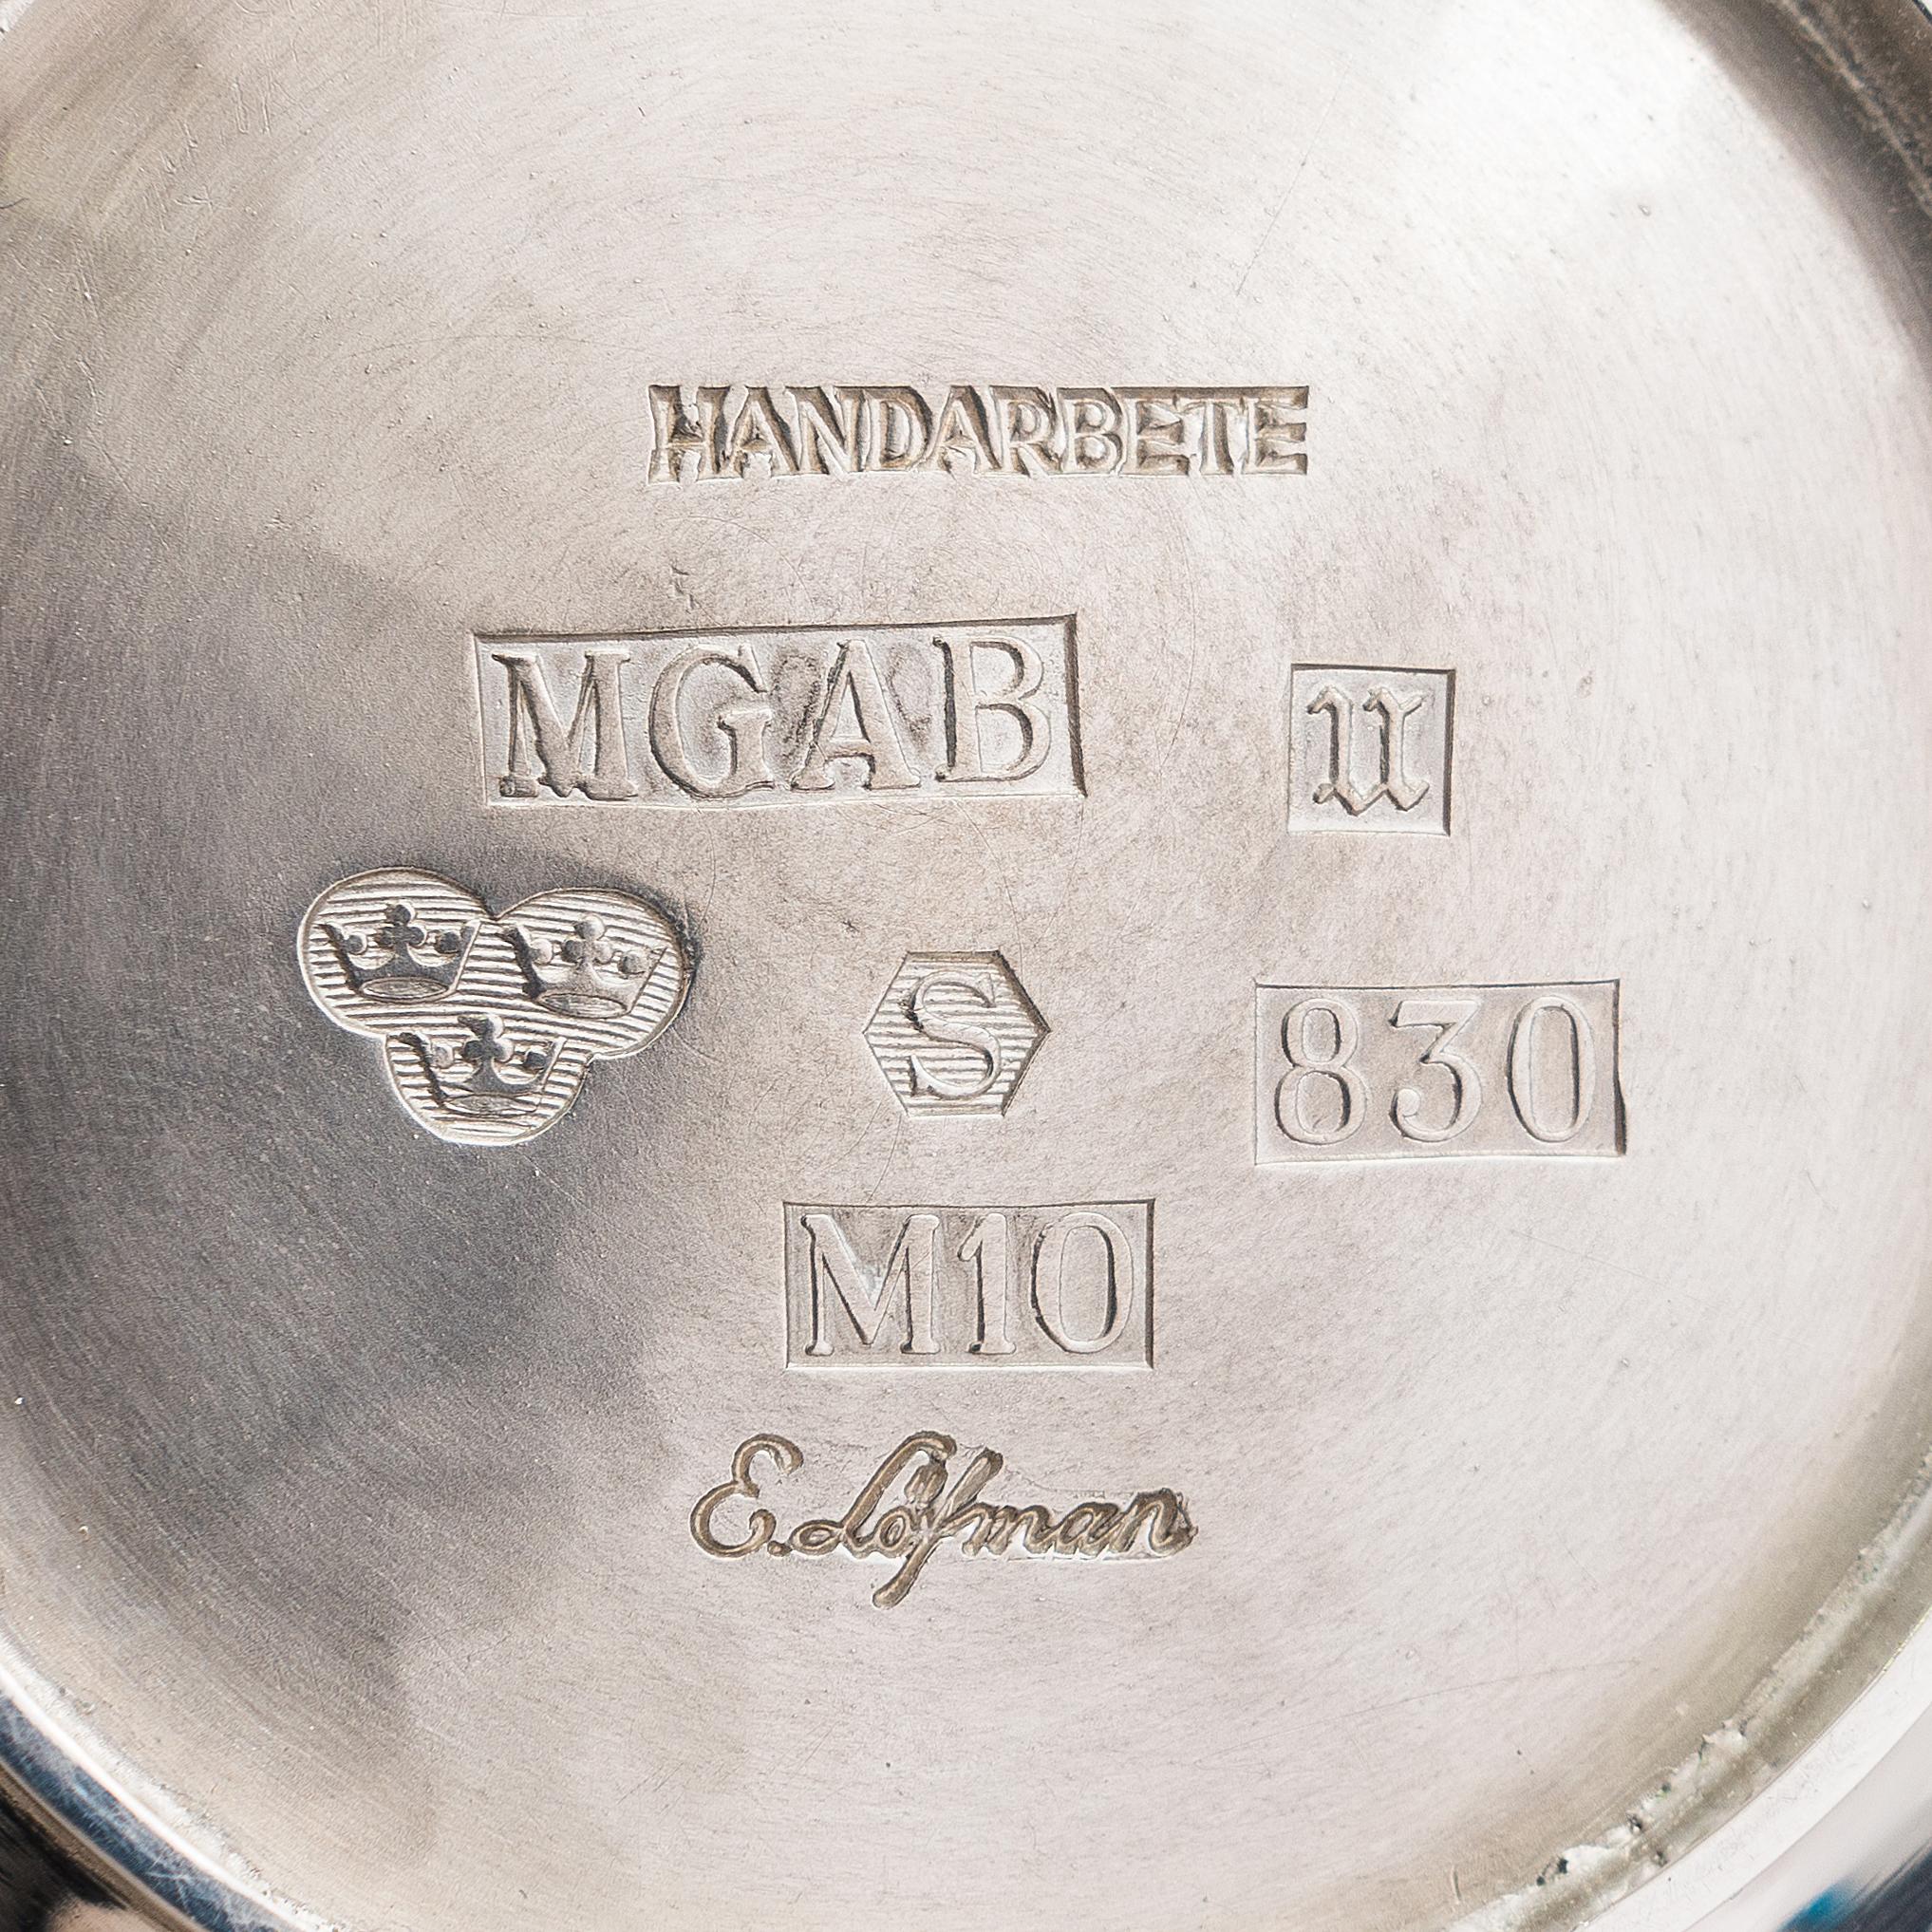 Eric Löfman (Suède, 1925-1994)
Bol en argent suédois, marque de fabrique d'Eric Löfman, MGAB, Uppsala 1986.
Surface martelée, base ronde. Hauteur 8,5-9,5 cm, diamètre env. 14 cm. Poids 305 g.
Usure insignifiante.